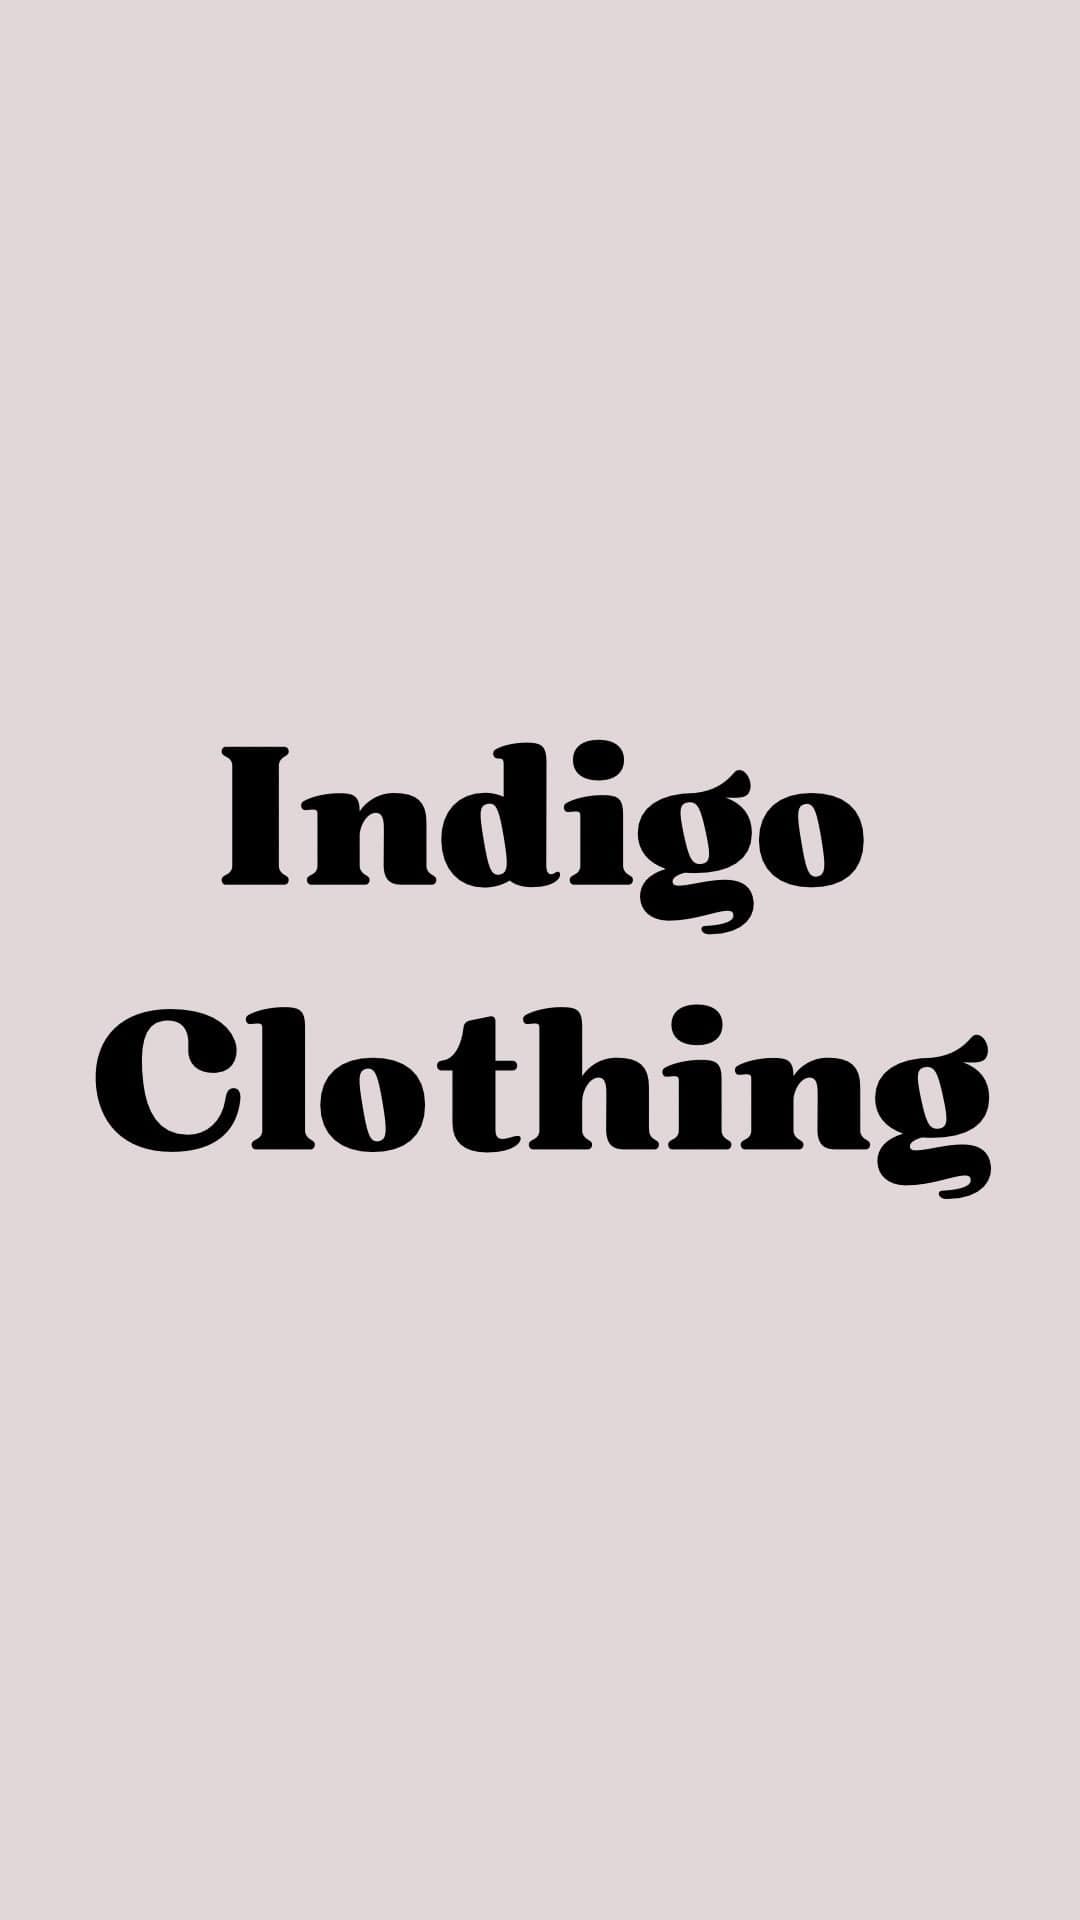 Indigo Clothing